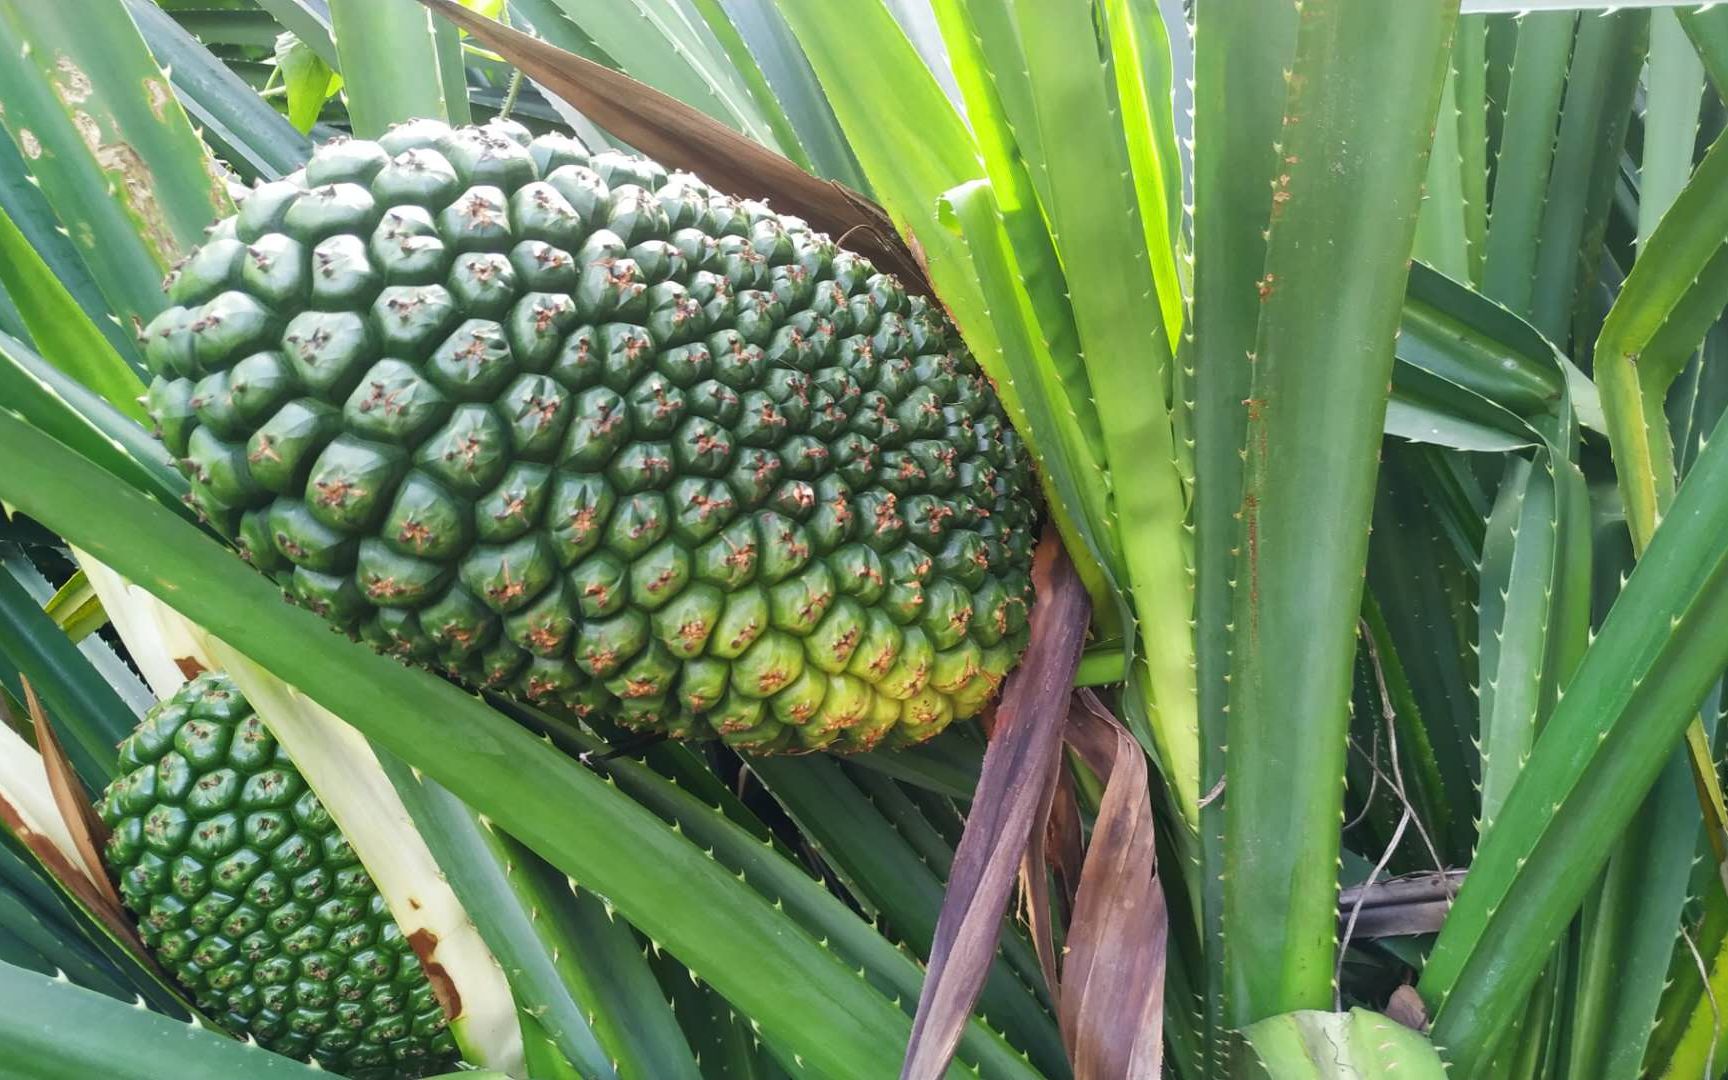 锋利的叶子保护着假菠萝,采收期一定要小心采摘,果实都是带刺的